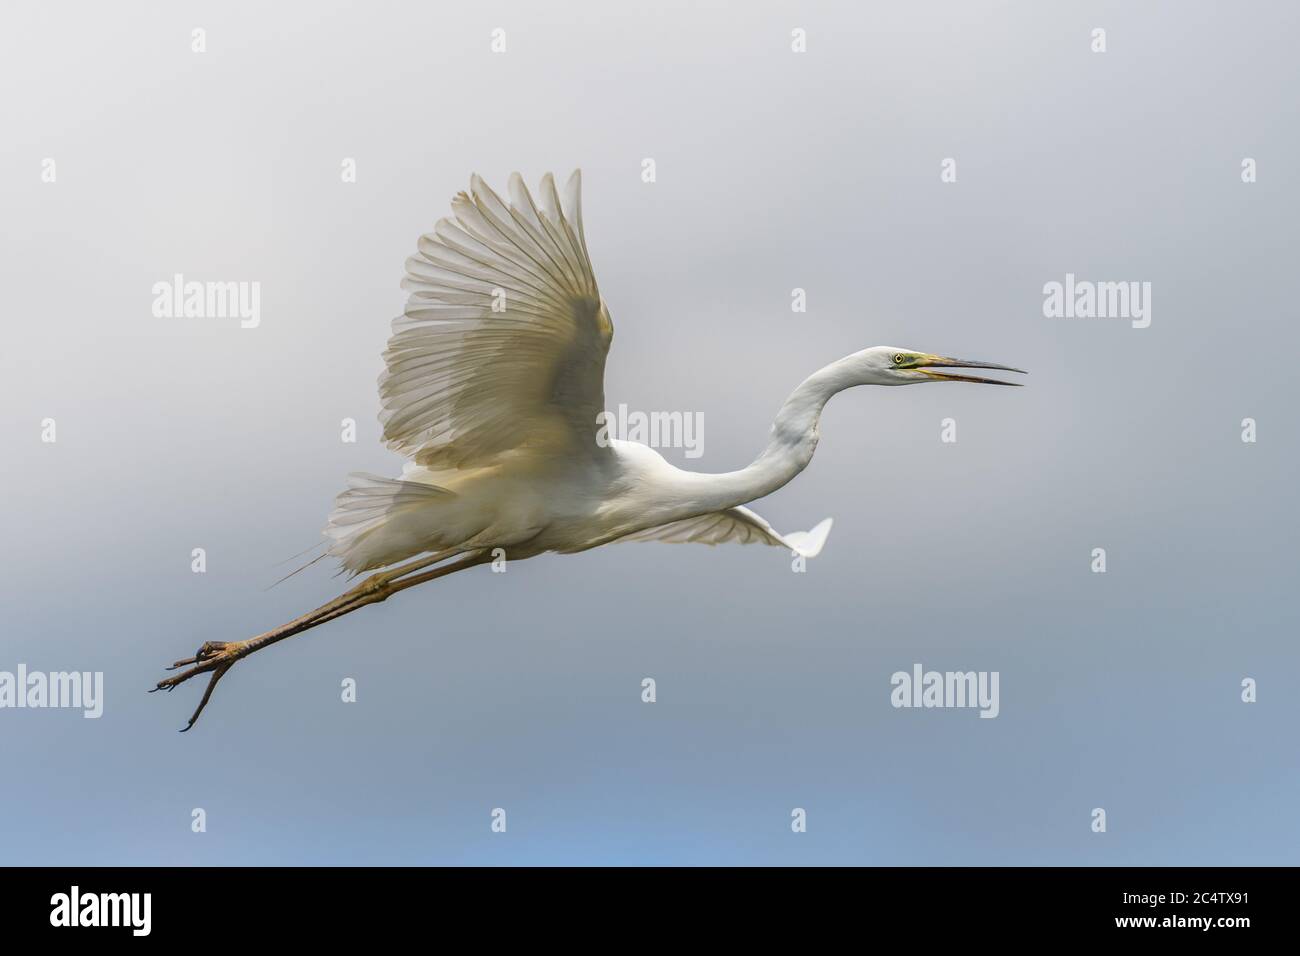 Weißer Reiher, Großreiher, fliegen auf dem Himmel Hintergrund. Wasservogel im Naturlebensraum. Wildtierszene Stockfoto